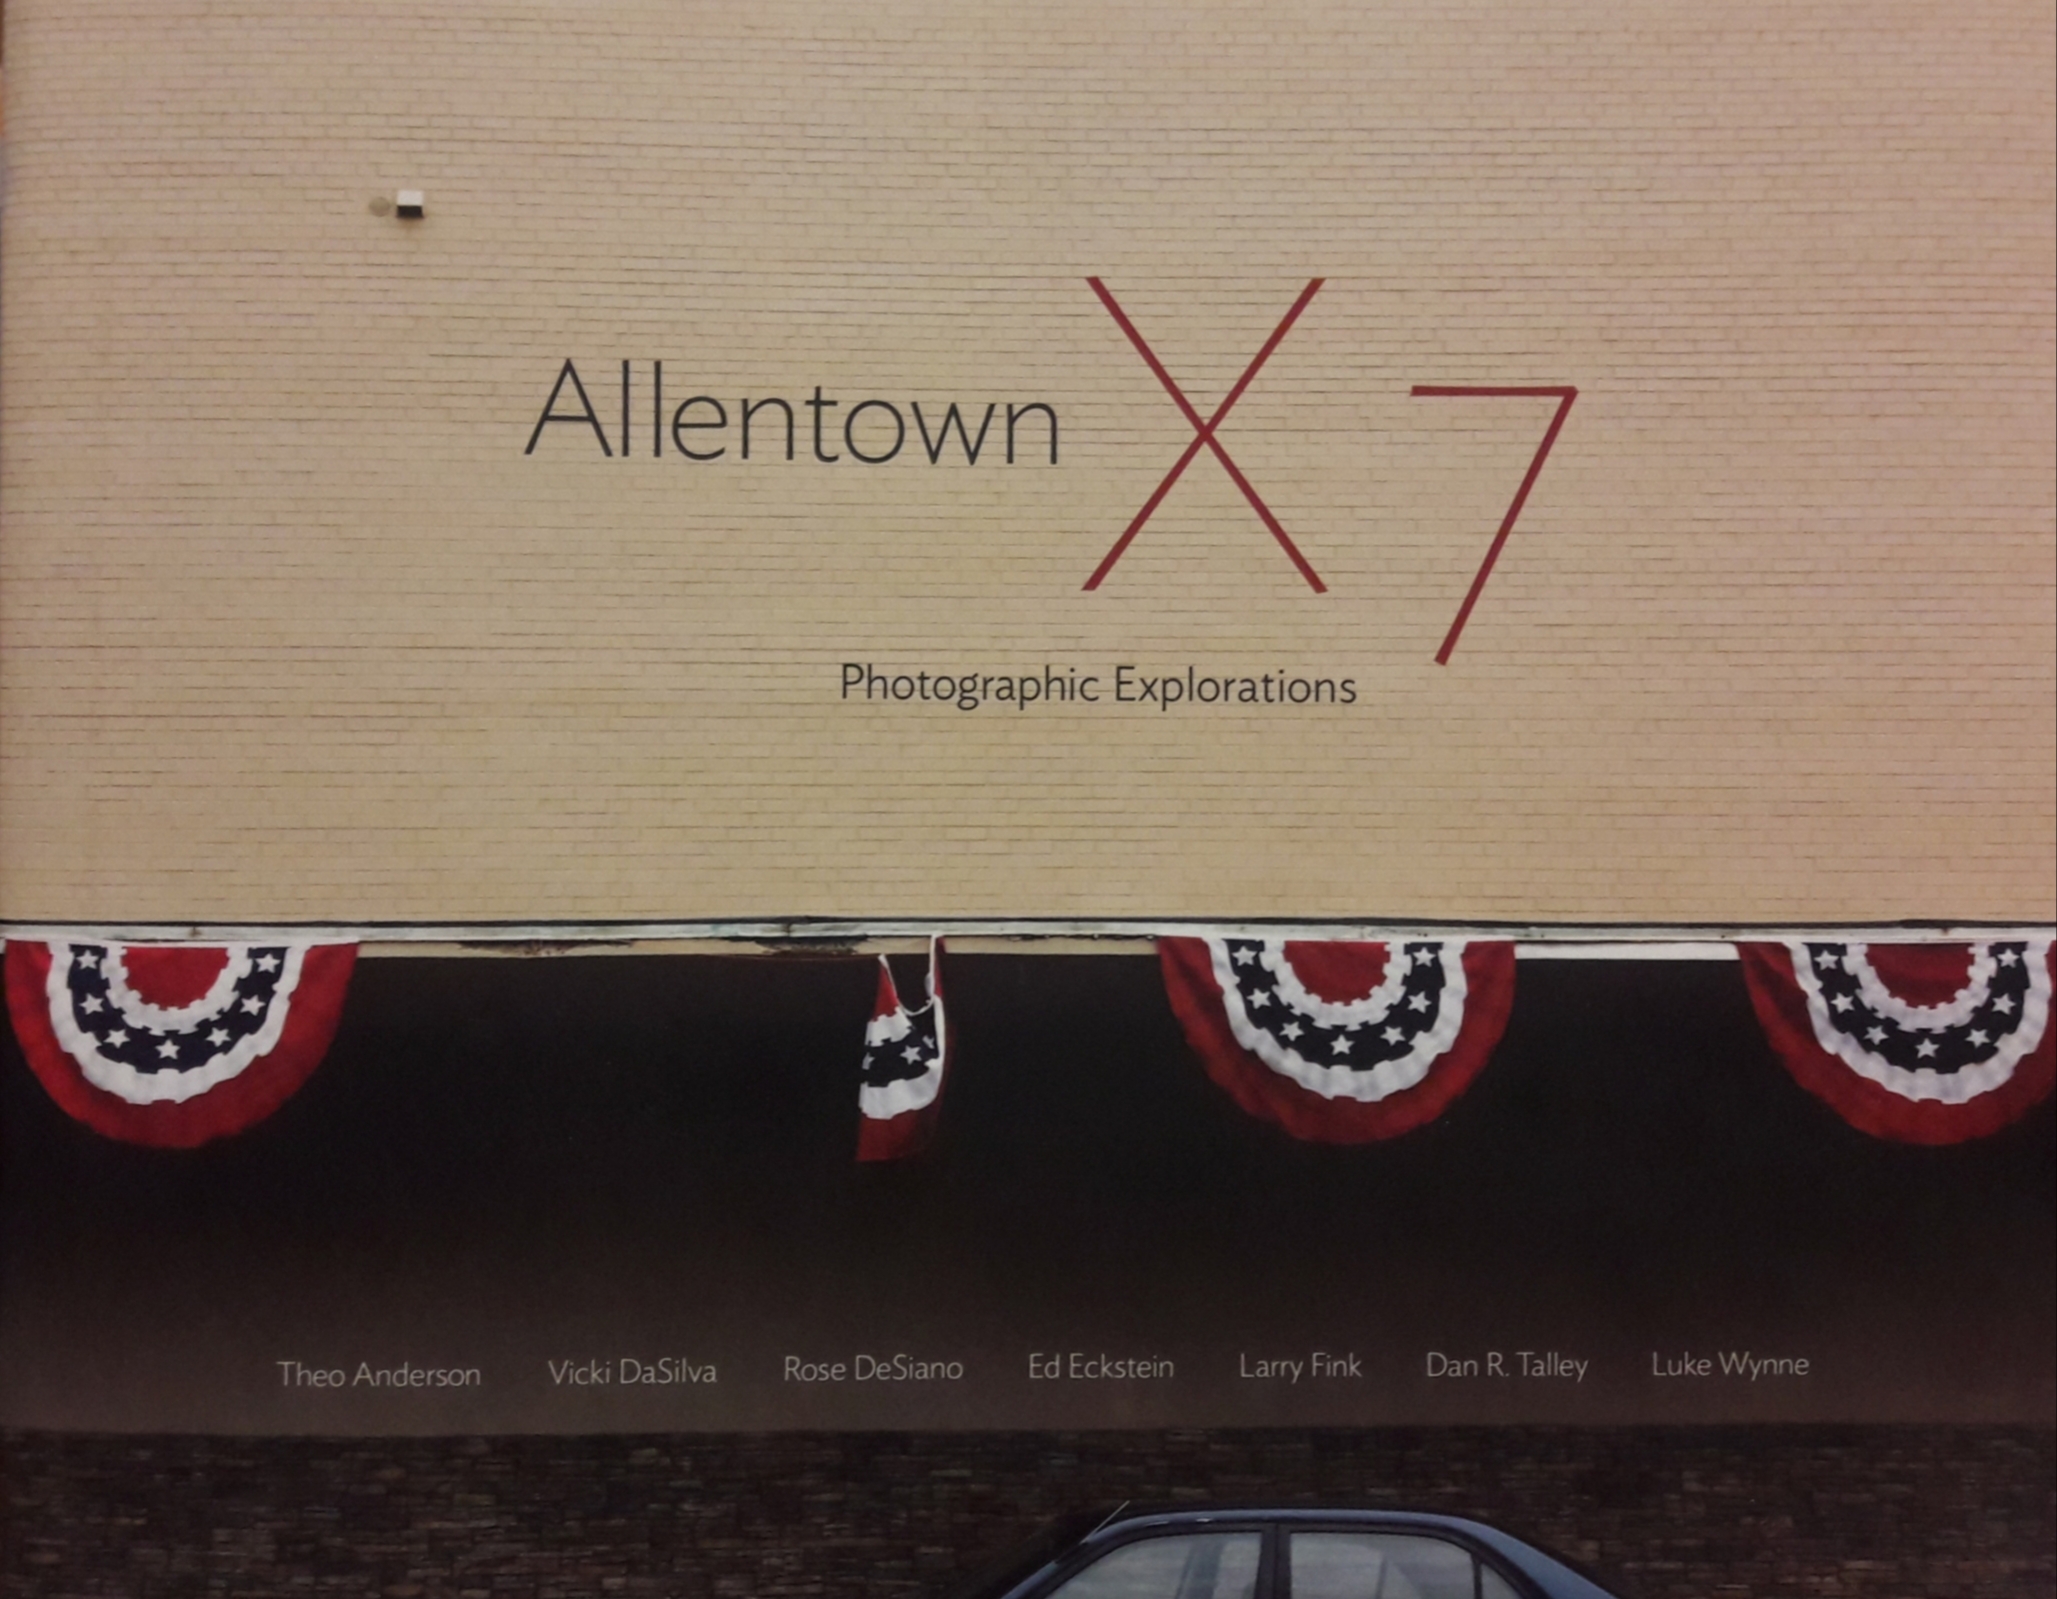 Allentown X 7